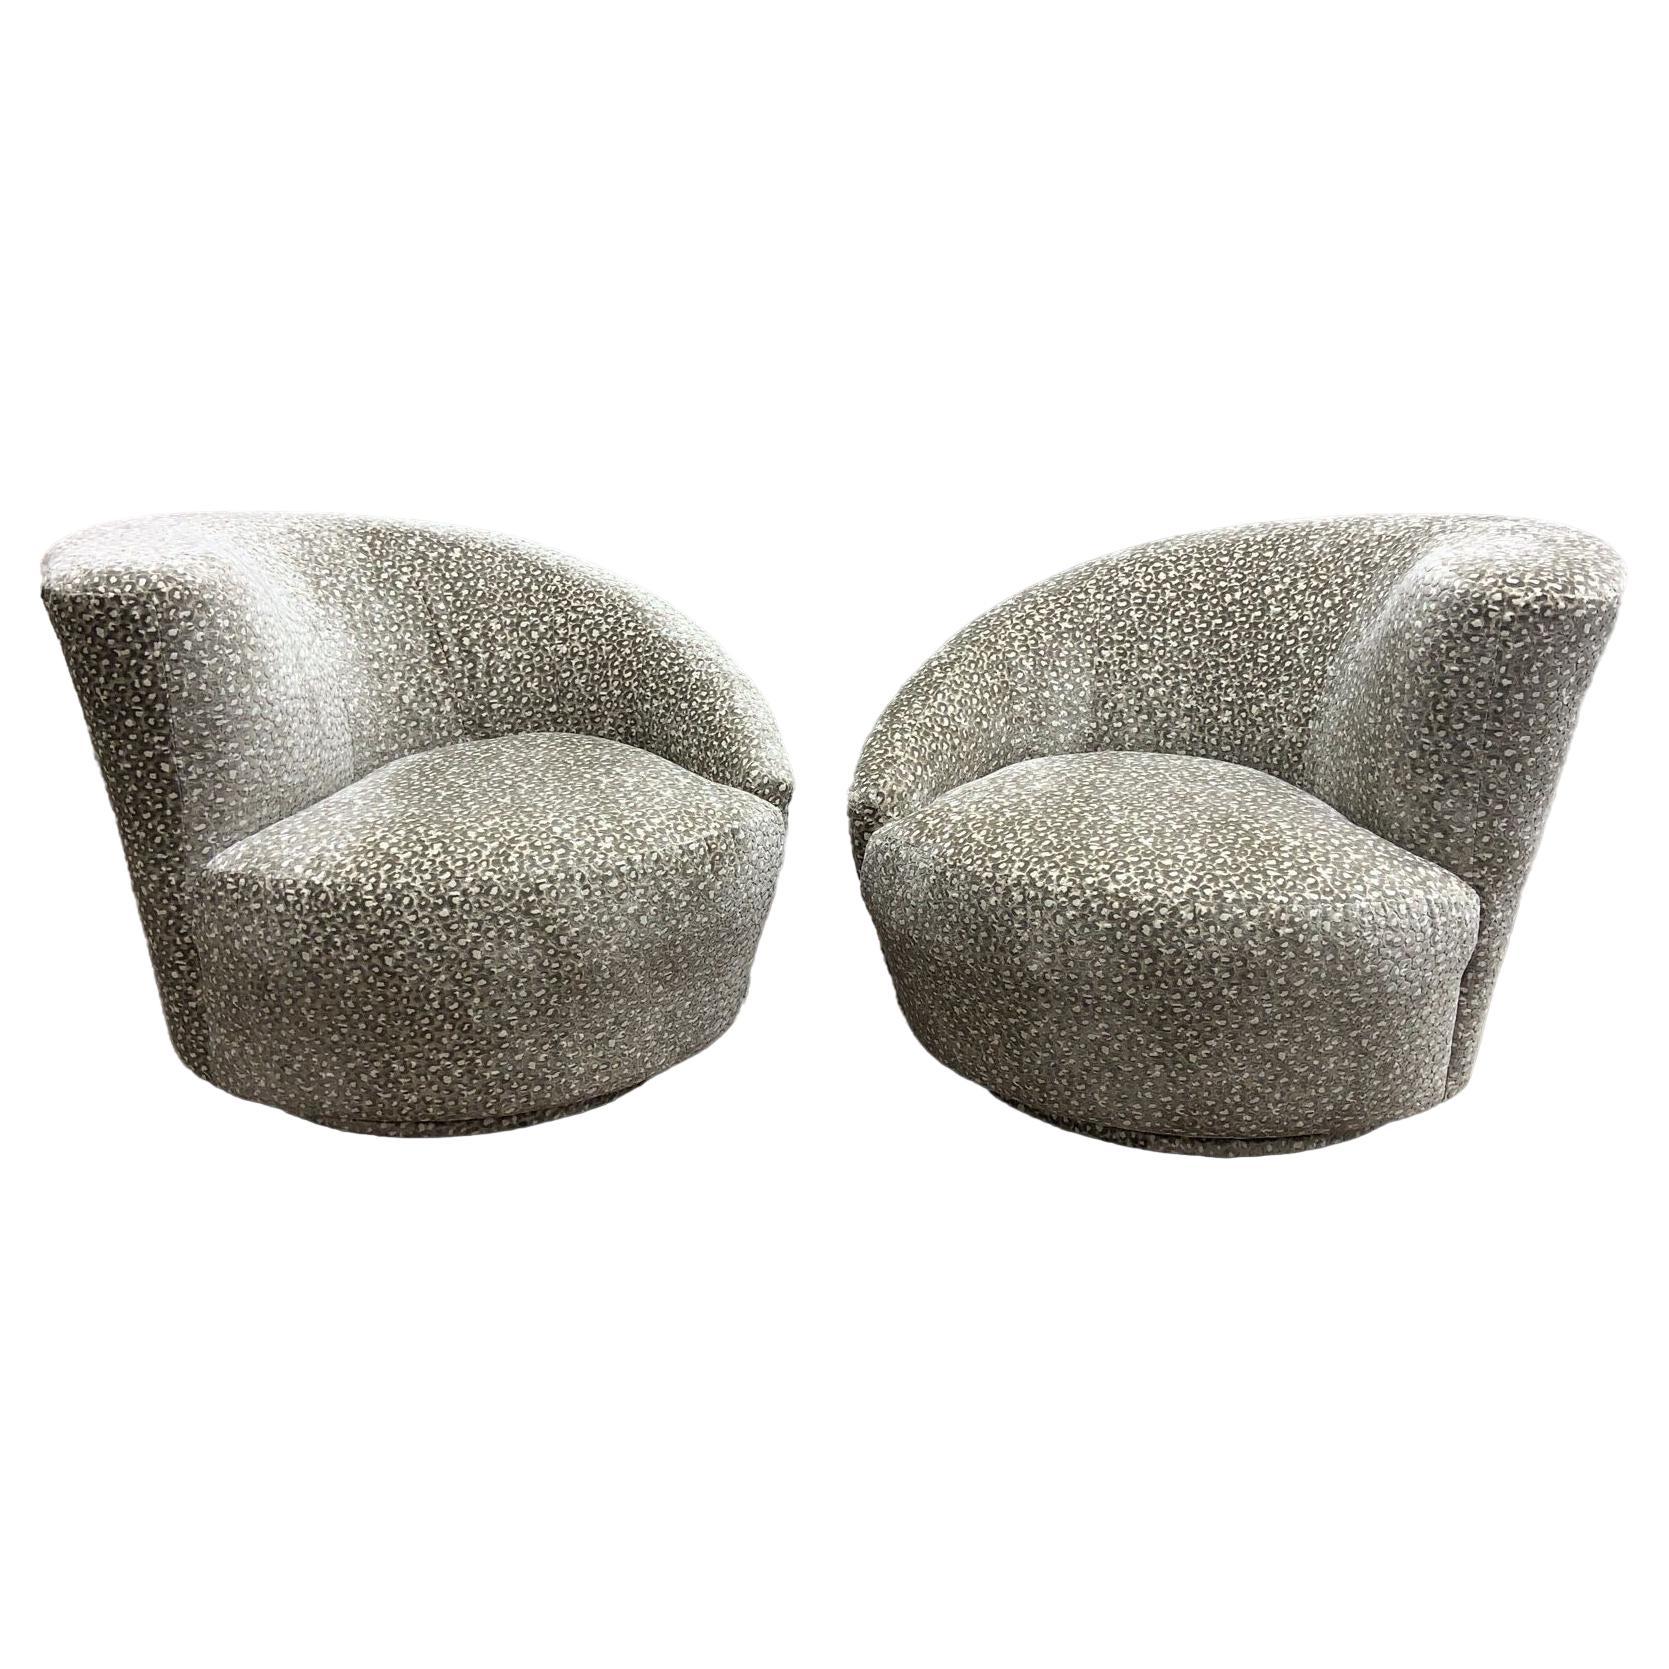 Vladimir Kagan Stil Asymmetrische schwenkbare Nautilus Weiman Lounge Stühle - Paar